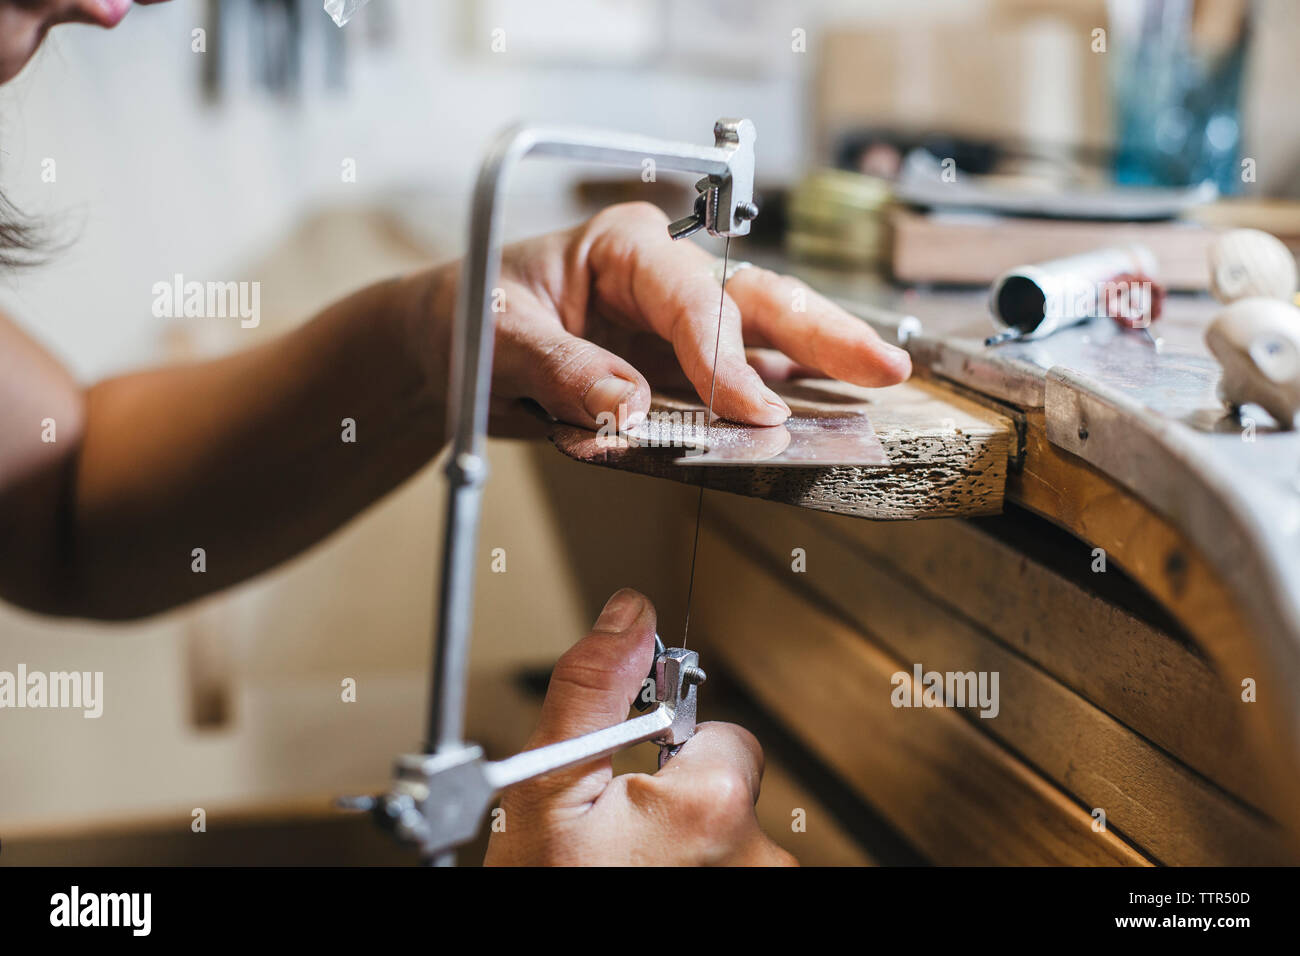 7/8 Hände der weiblichen Handwerker mit handsäge während Herstellung von Schmuck auf hölzernen Tisch in Werkstatt Stockfoto